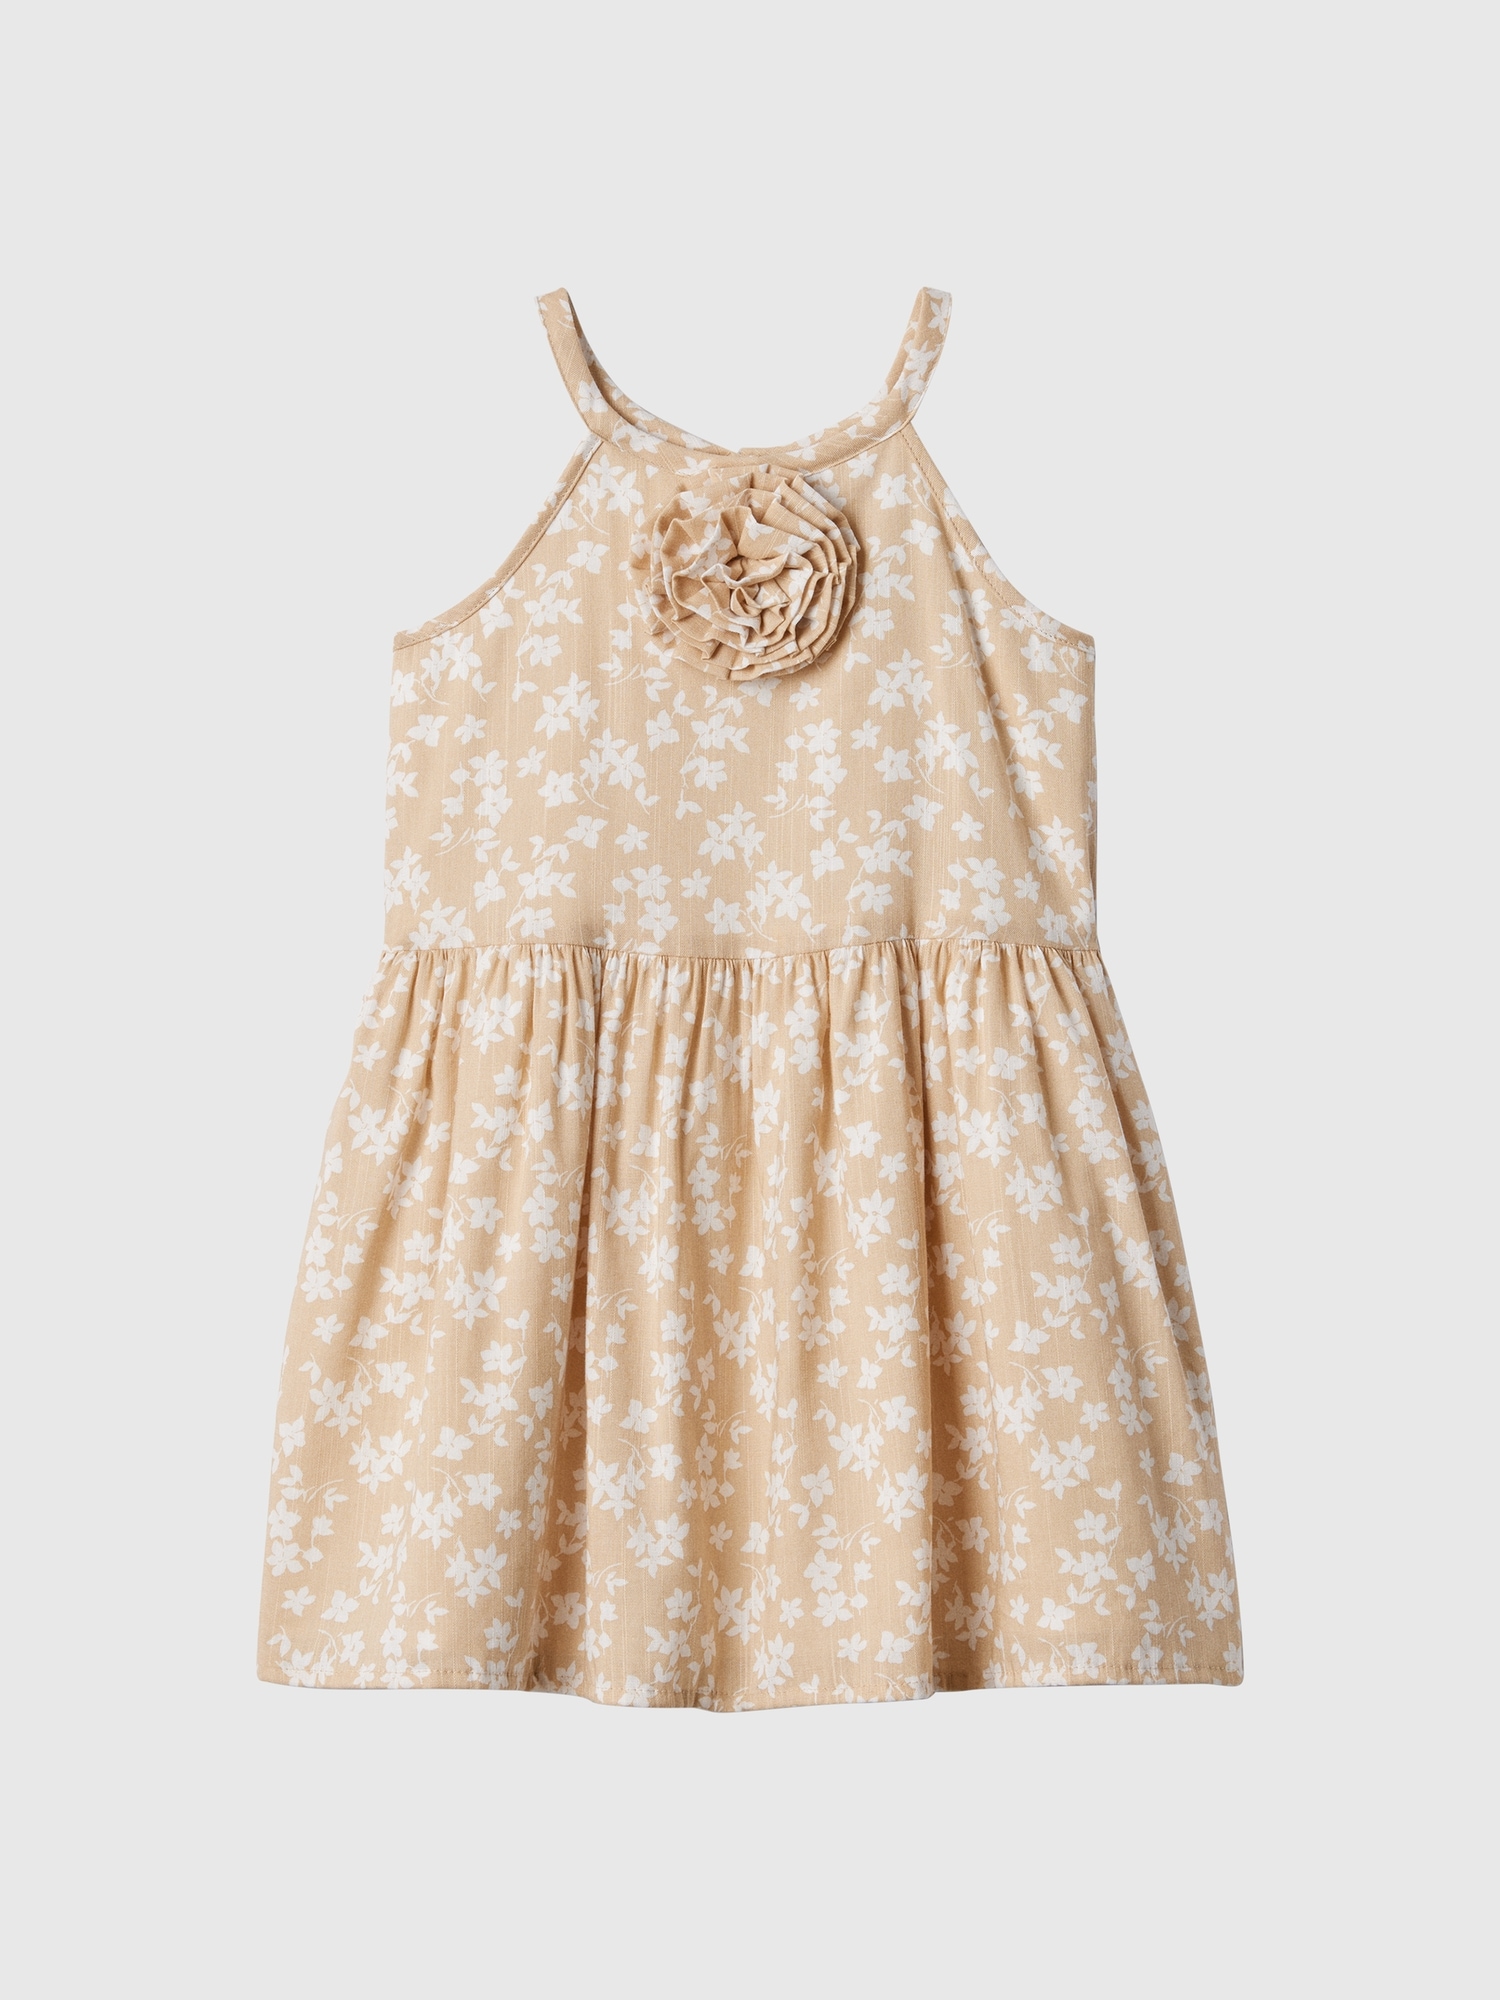 babyGap Print Sleeveless Rosette Dress